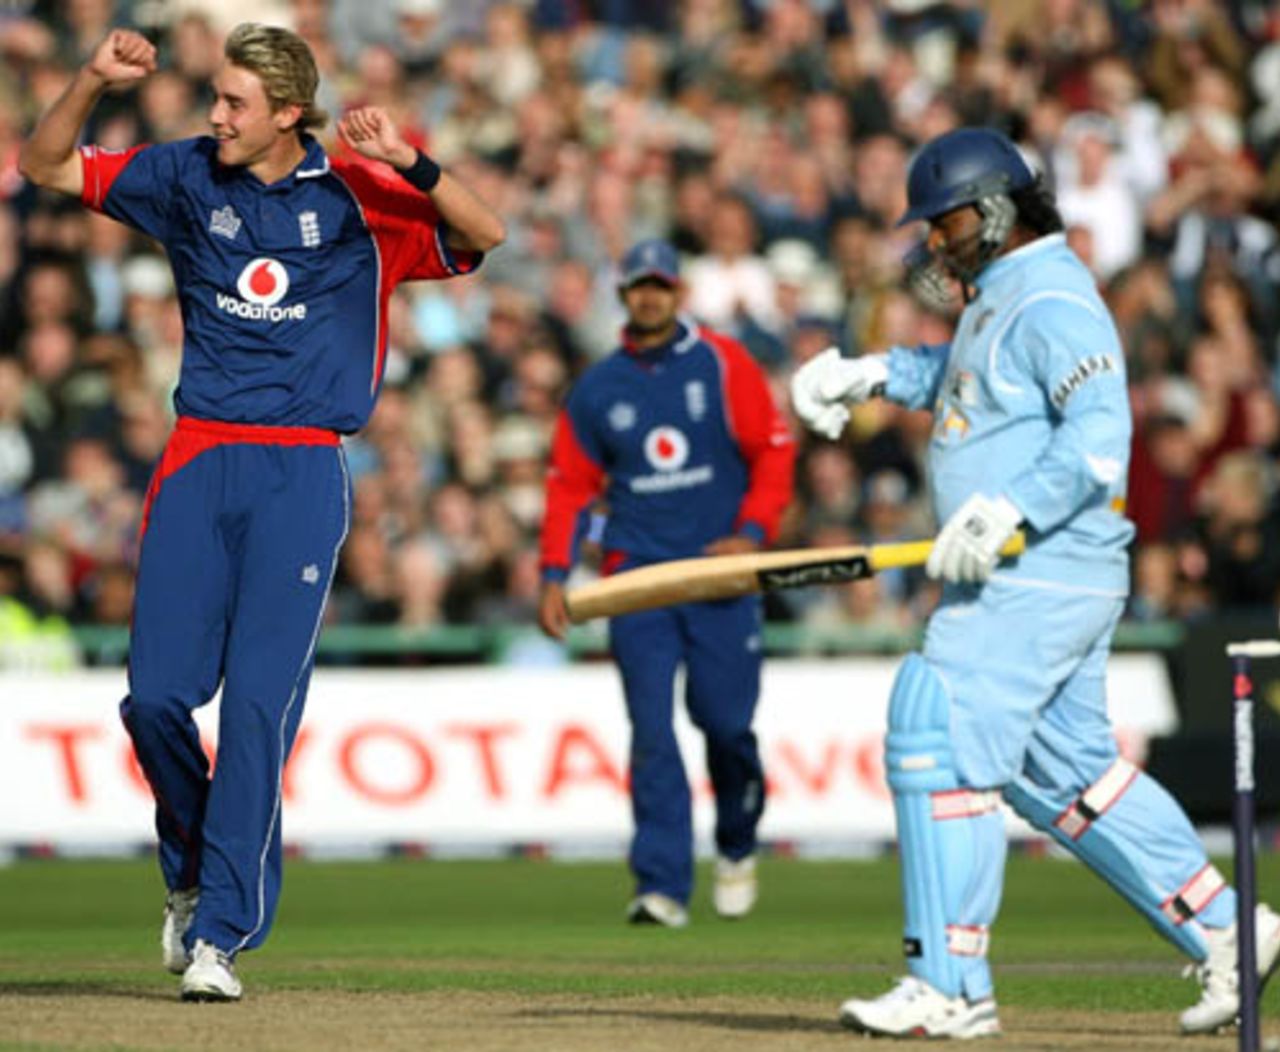 Ramesh Powar walks back after being dismissed by Stuart Broad,  England v India, 4th ODI, Old Trafford, August 30, 2007
